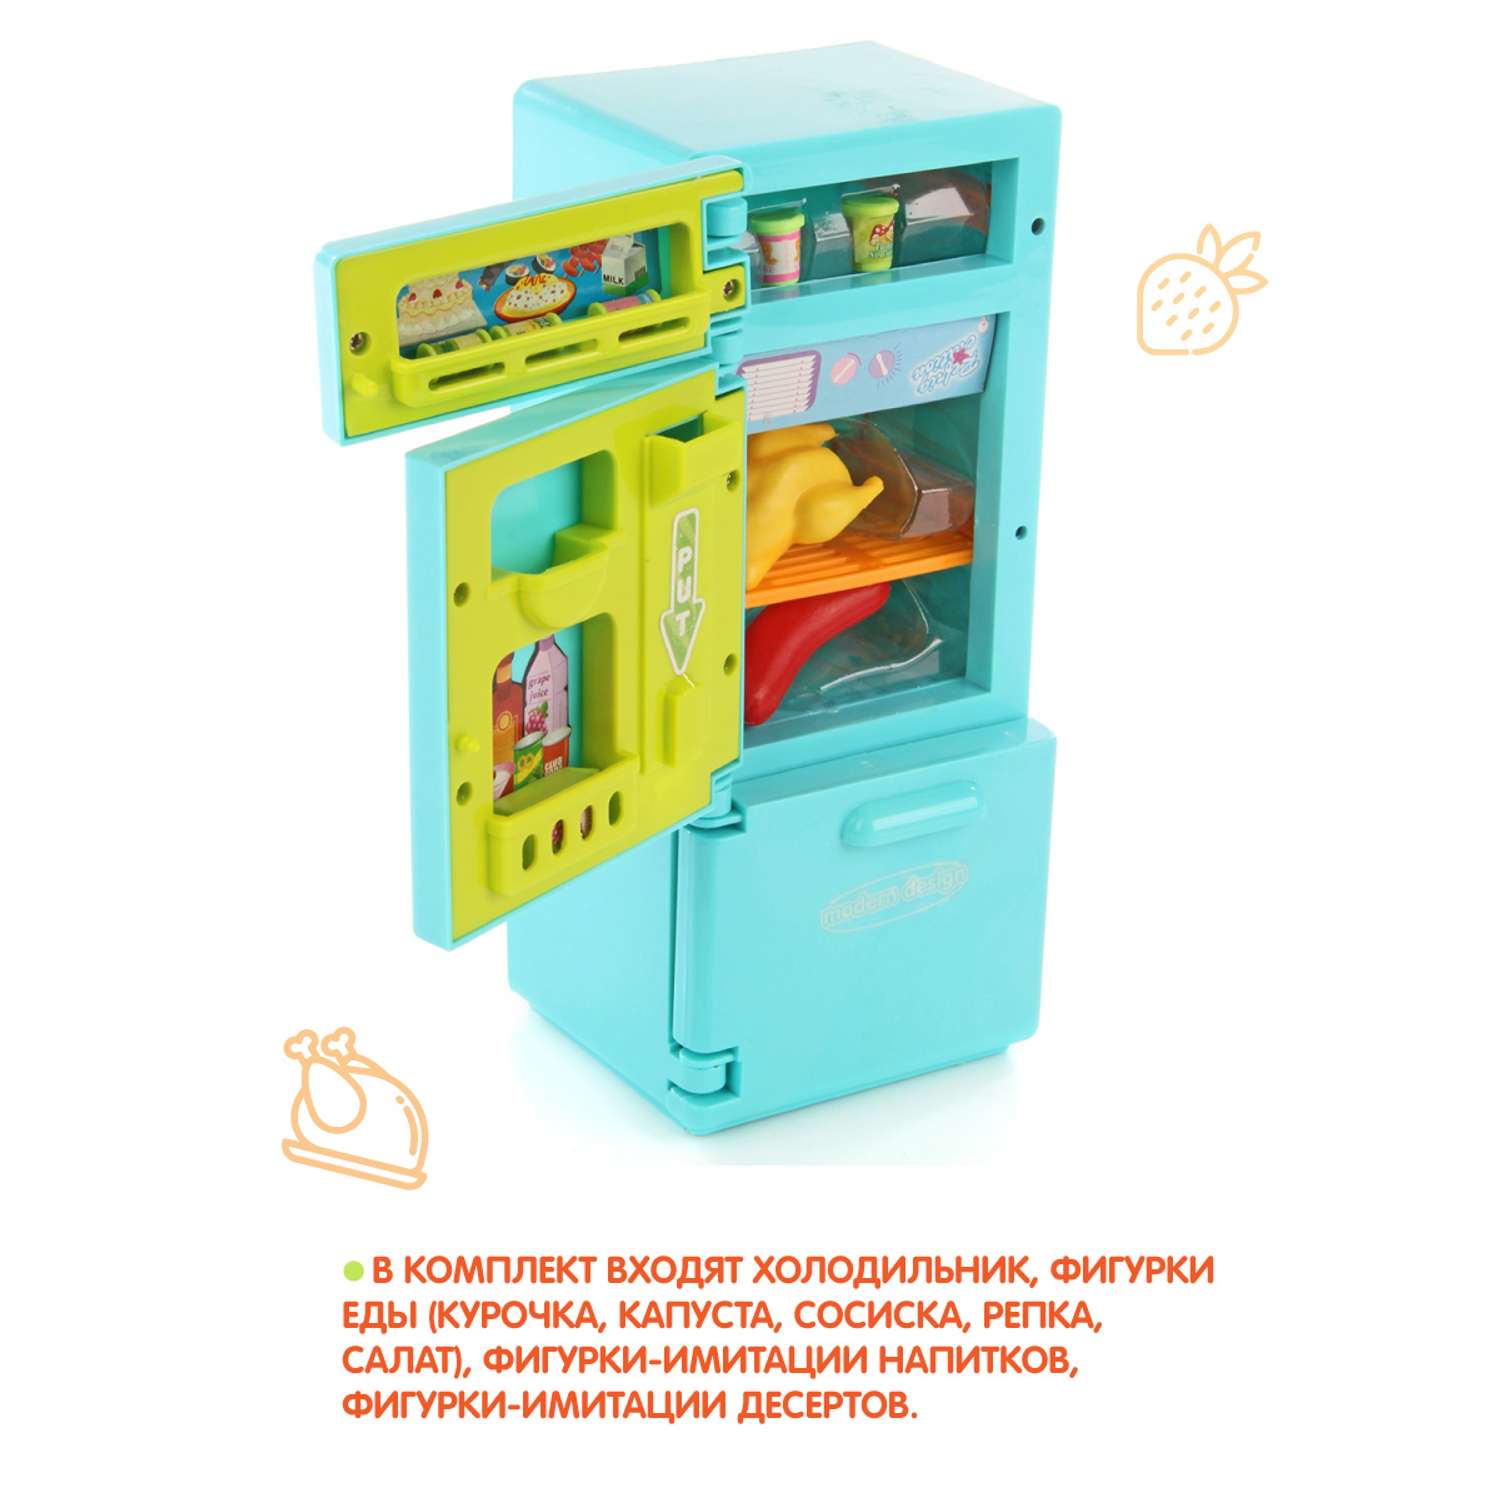 Холодильник Amico с продуктами свет звук - фото 2